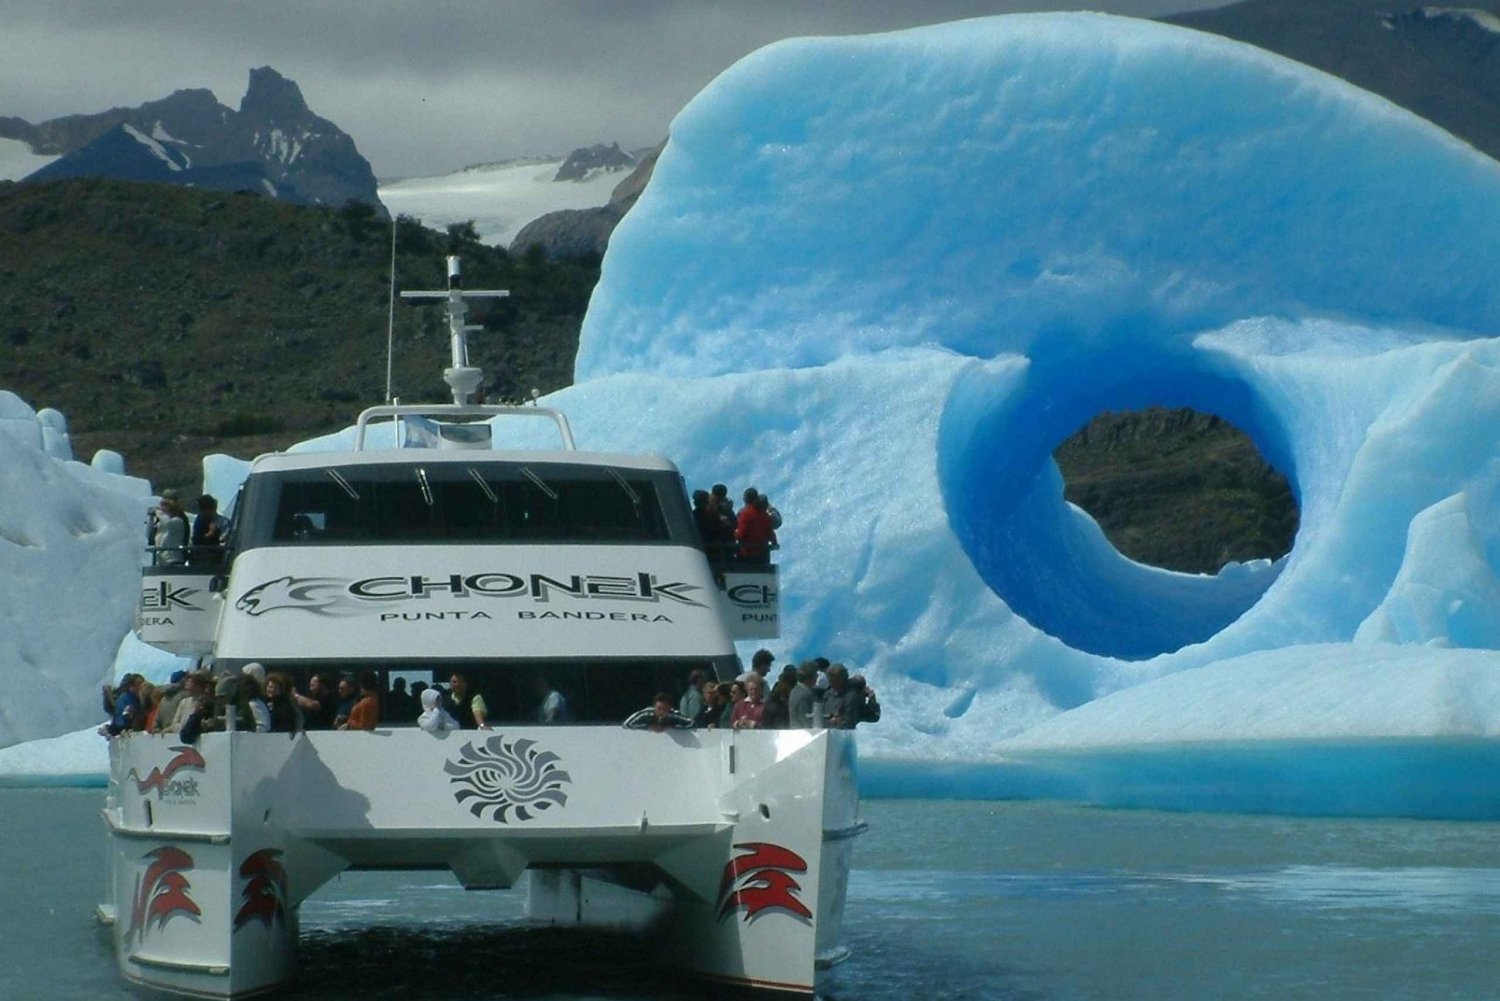 El Calafate: Paseo en Barco por Todo Glaciares